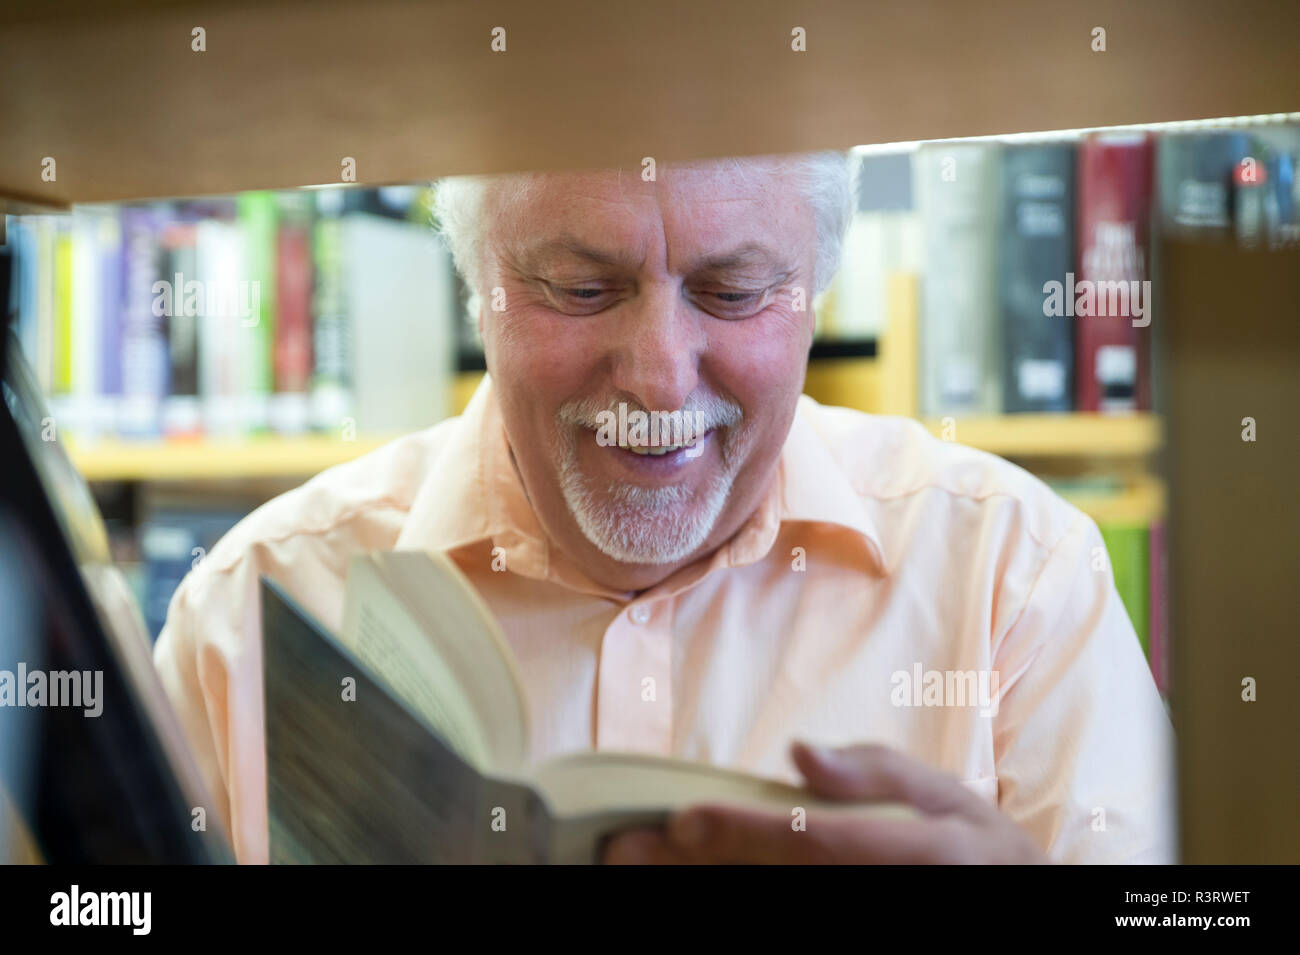 Senior liest lachen ein Buch an einem BÃ¼cherregal. Grevenbroich, Nordrhein-Westfalen, Deutschland Stock Photo